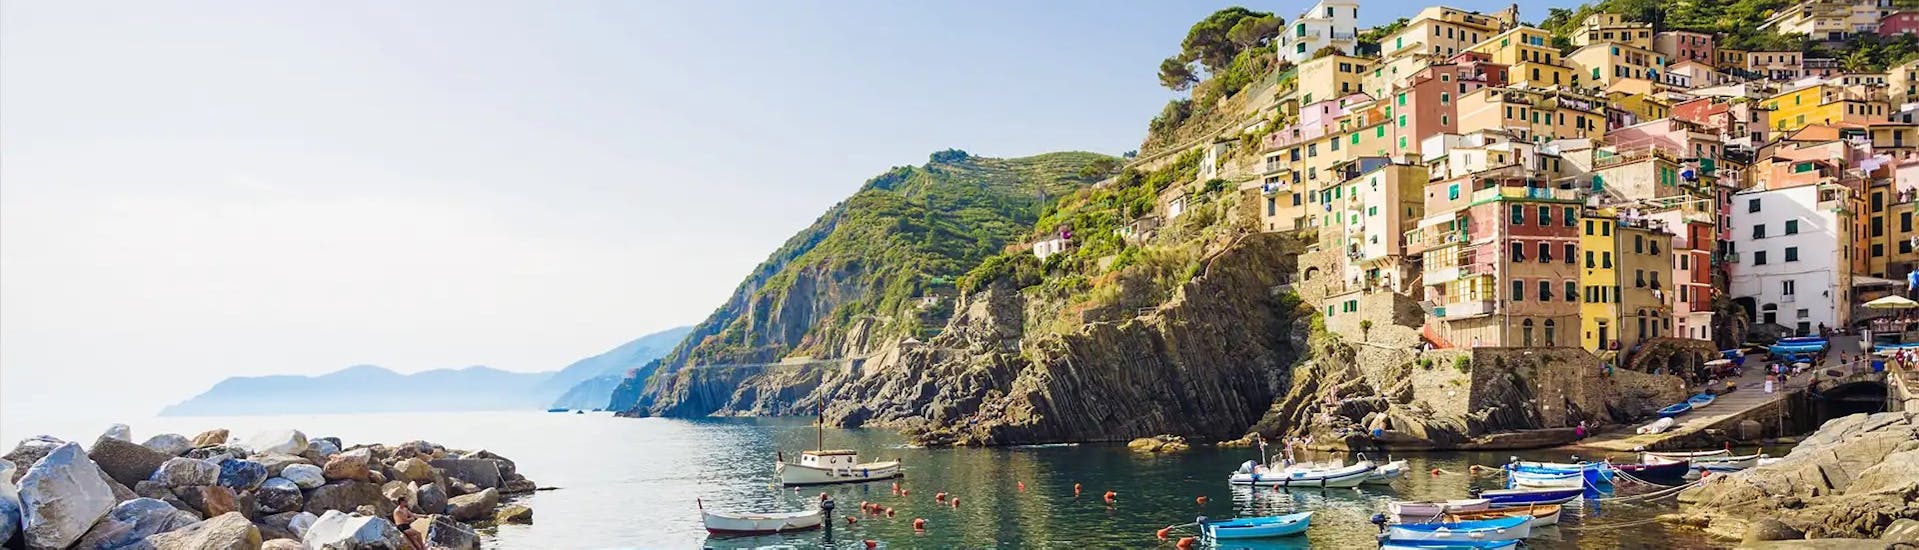 La vista che potrete ammirare durante la Gita in barca da La Spezia alle Cinque Terre, Porto Venere e alla Grotta di Lord Byron con 5 Terre Boat Experience.